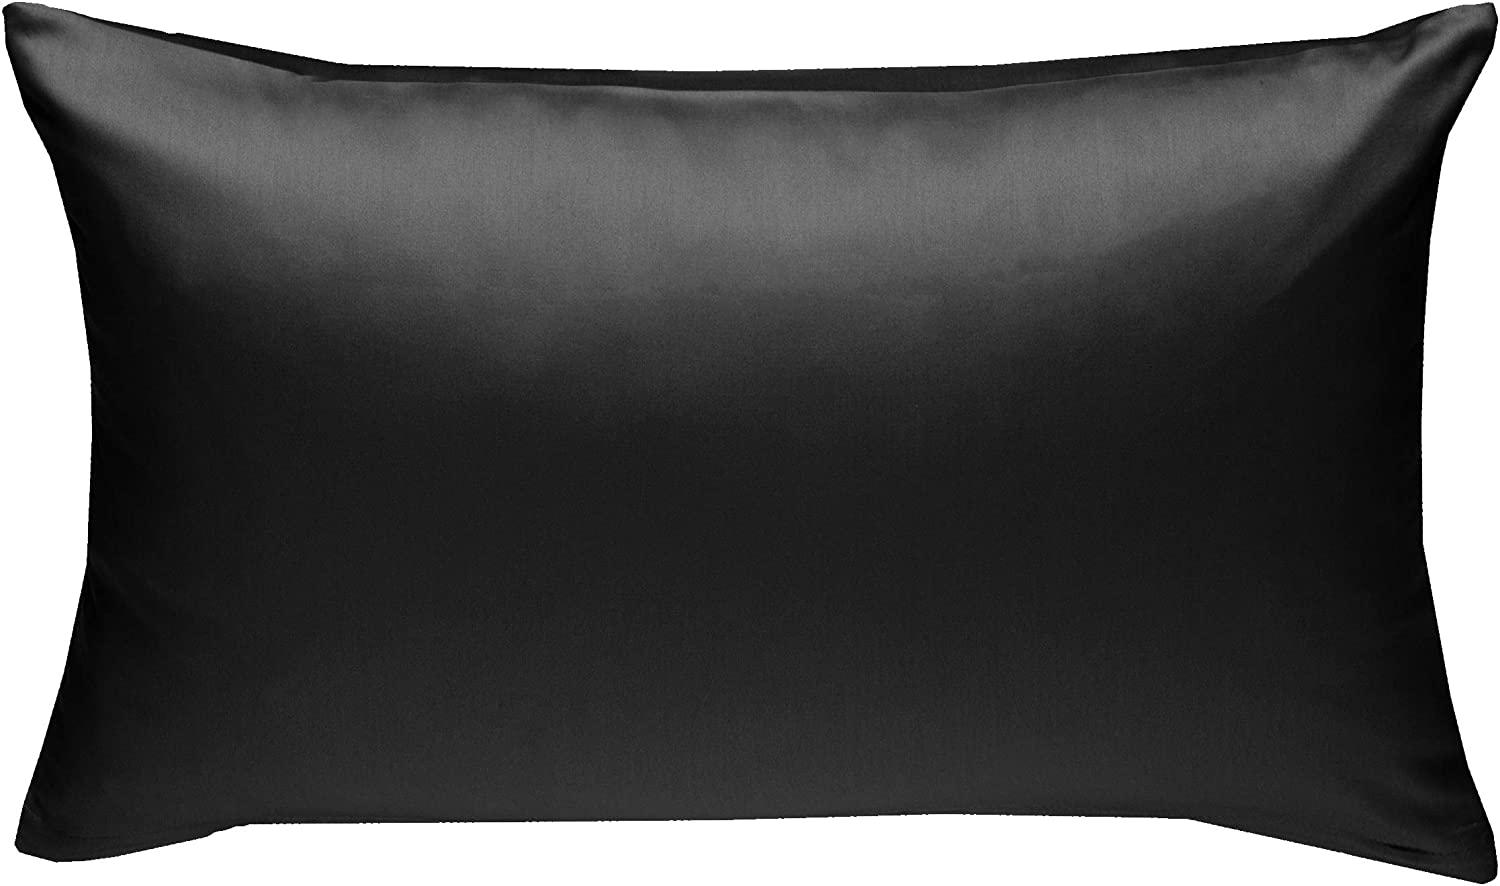 Bettwaesche-mit-Stil Mako-Satin / Baumwollsatin Bettwäsche uni / einfarbig schwarz Kissenbezug 60x80 cm Bild 1